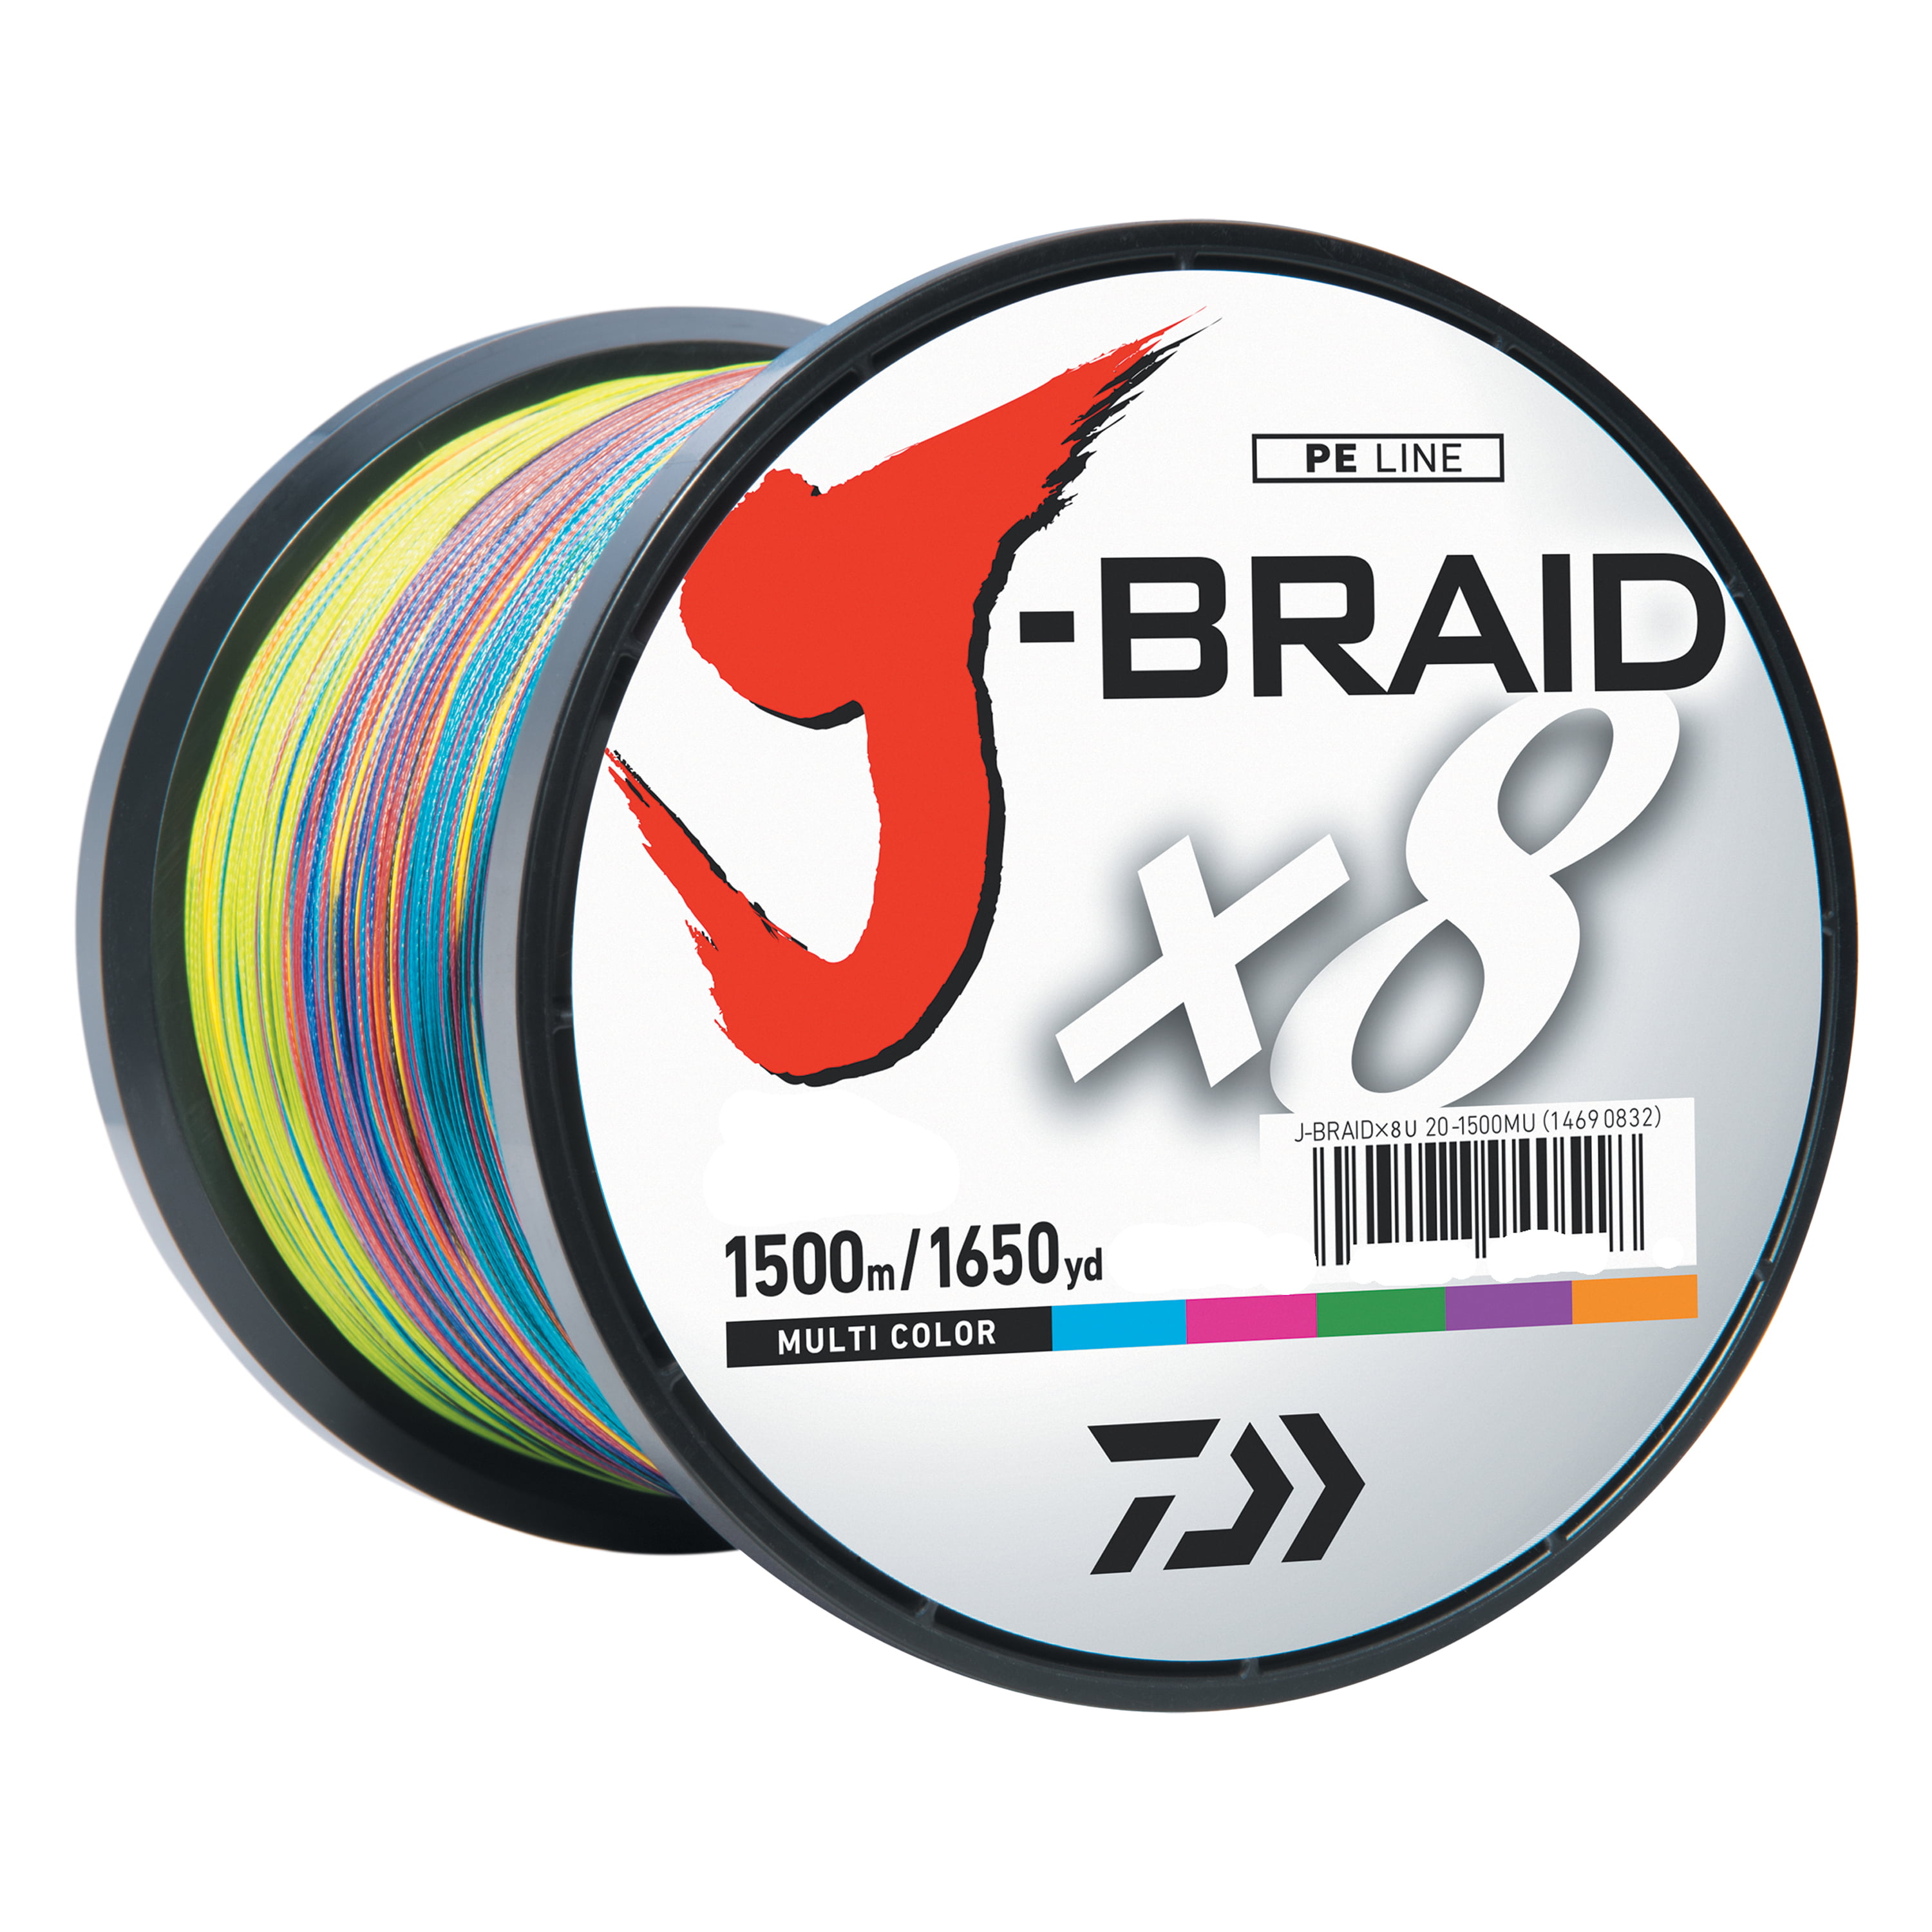 Daiwa J Braid X8 Braided Fishing Line 40lb 500m Multi Colour – Mid